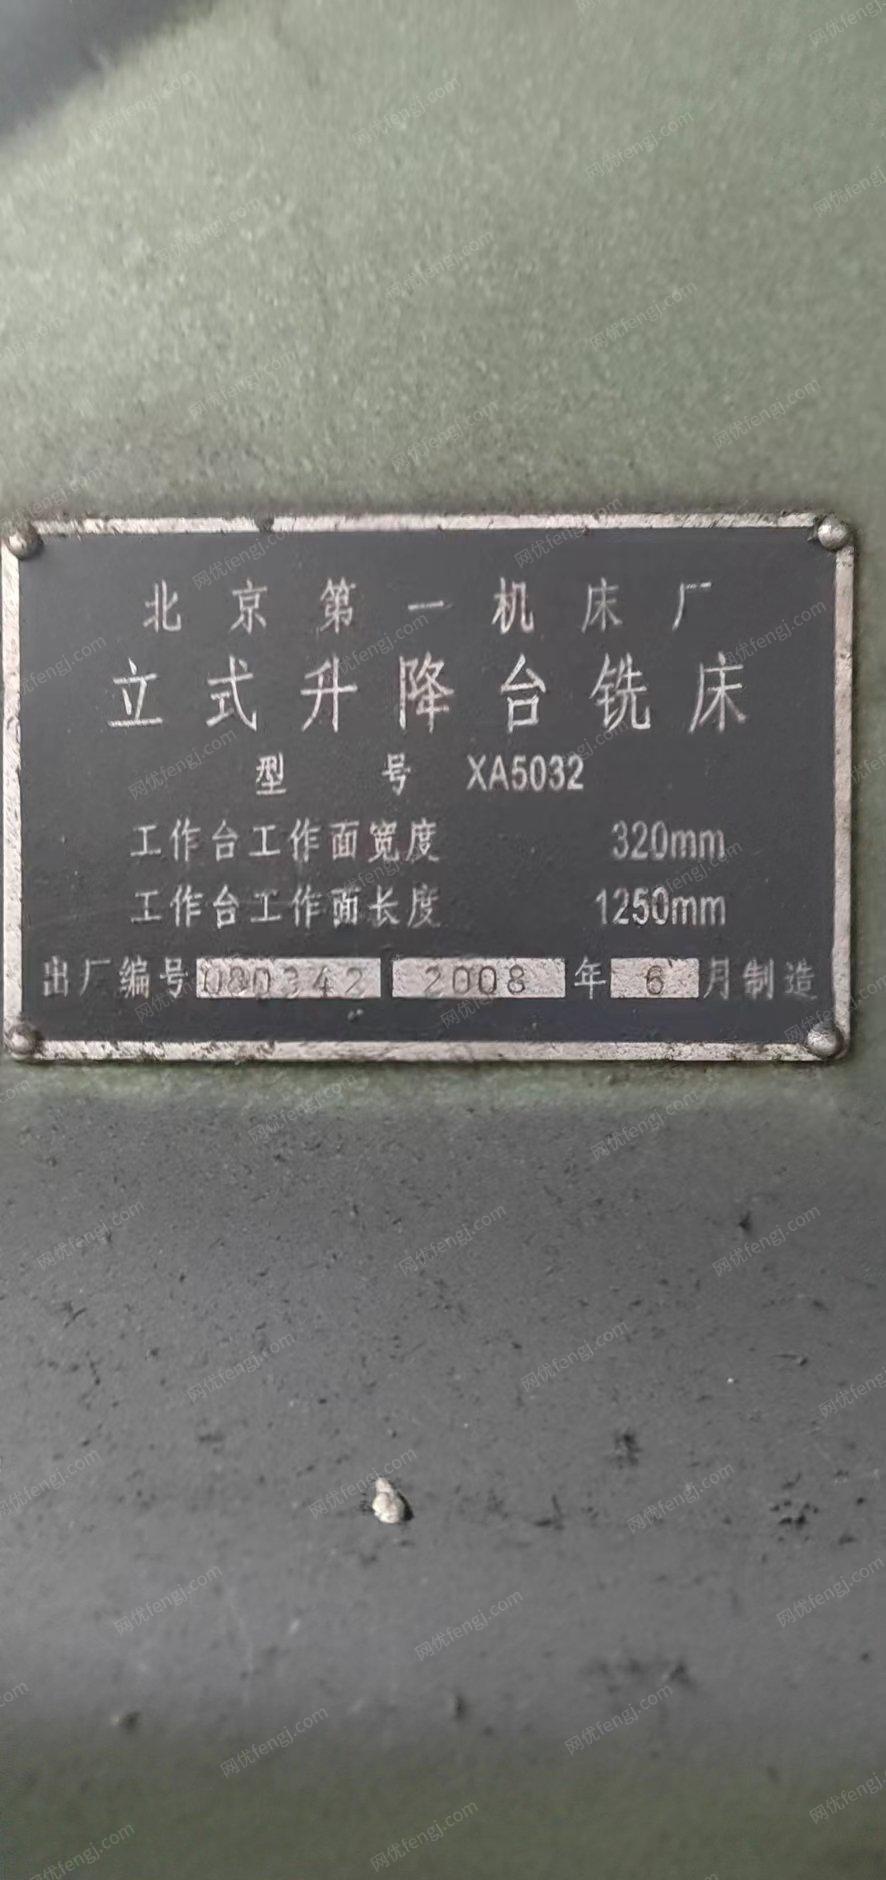 吉林吉林在位用北京52k铣床处理。